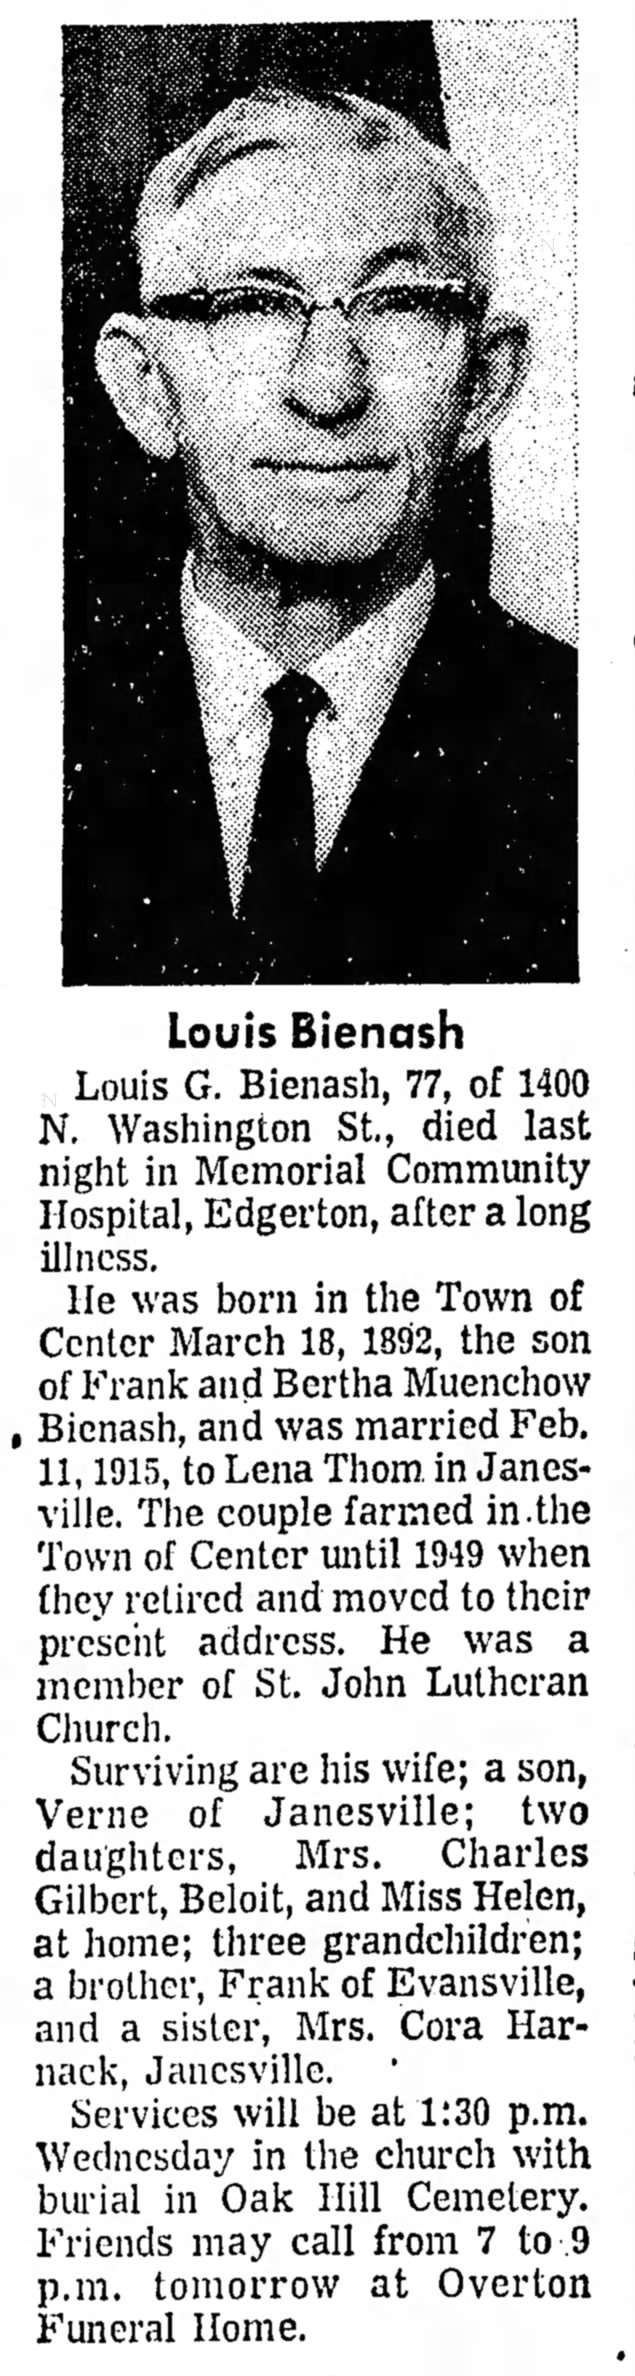 Louis Bienash obit w/ pix
20 Oct 1969